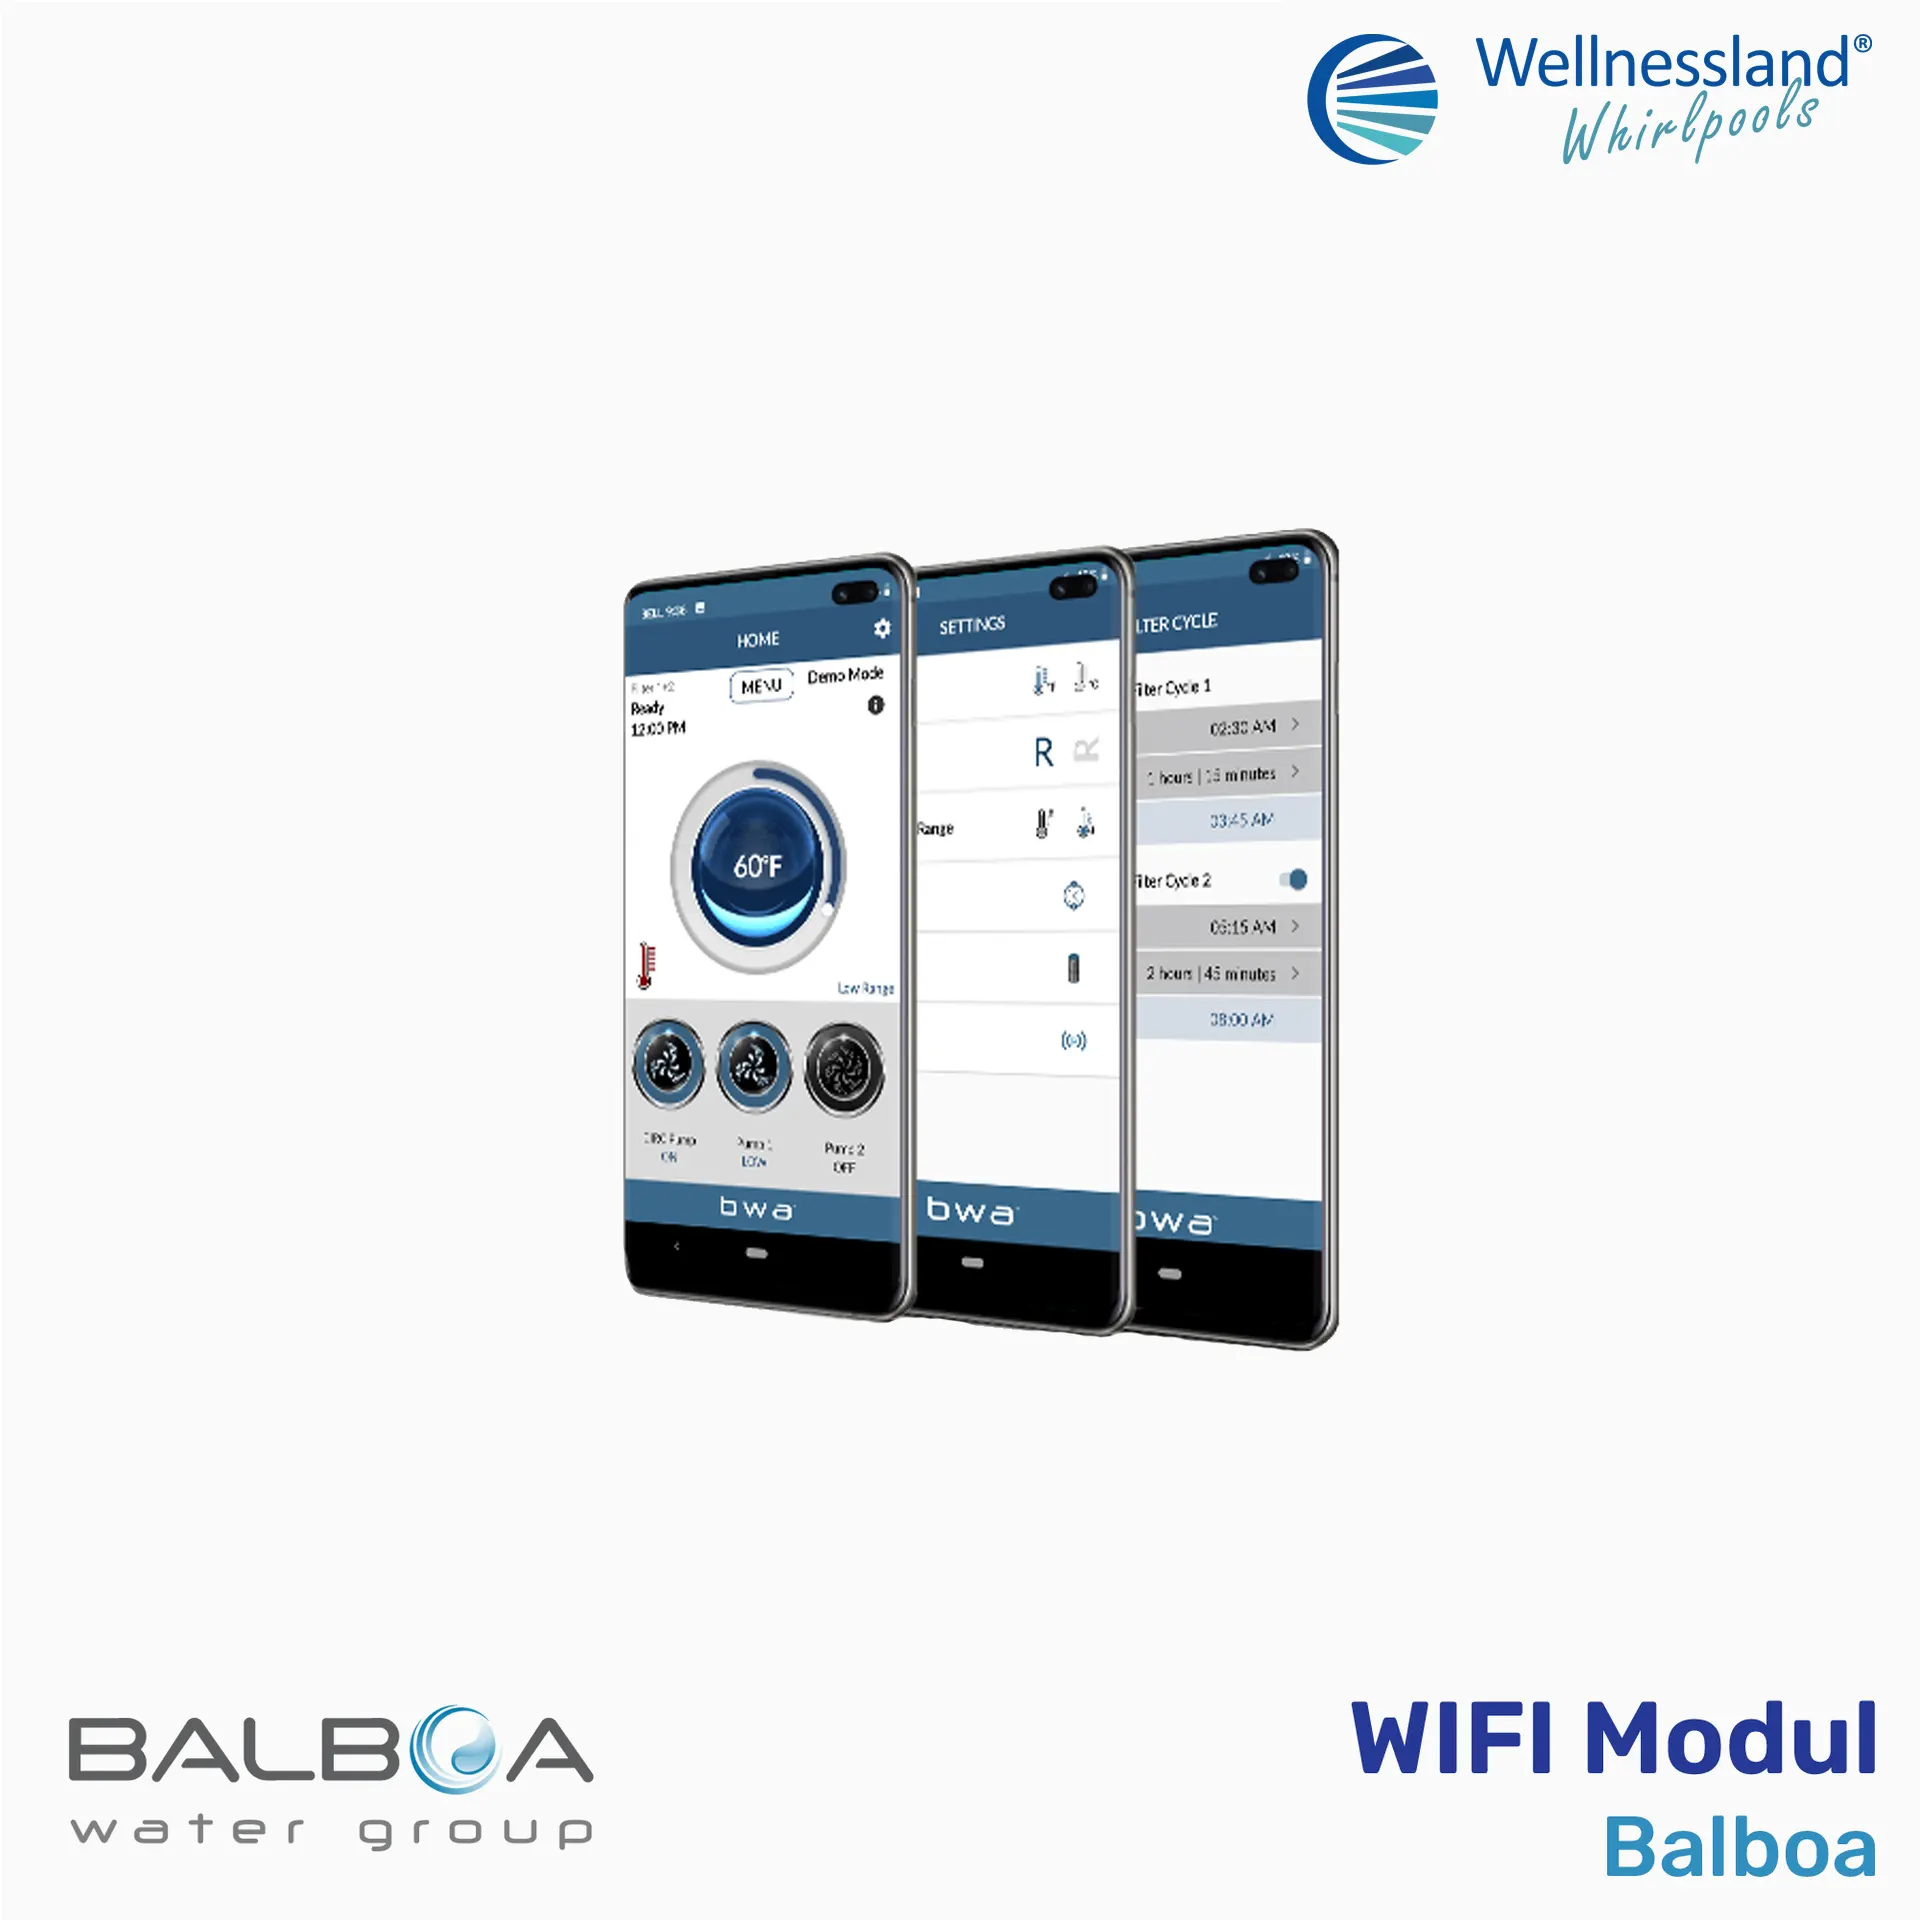 Wi-Fi Modul Balboa